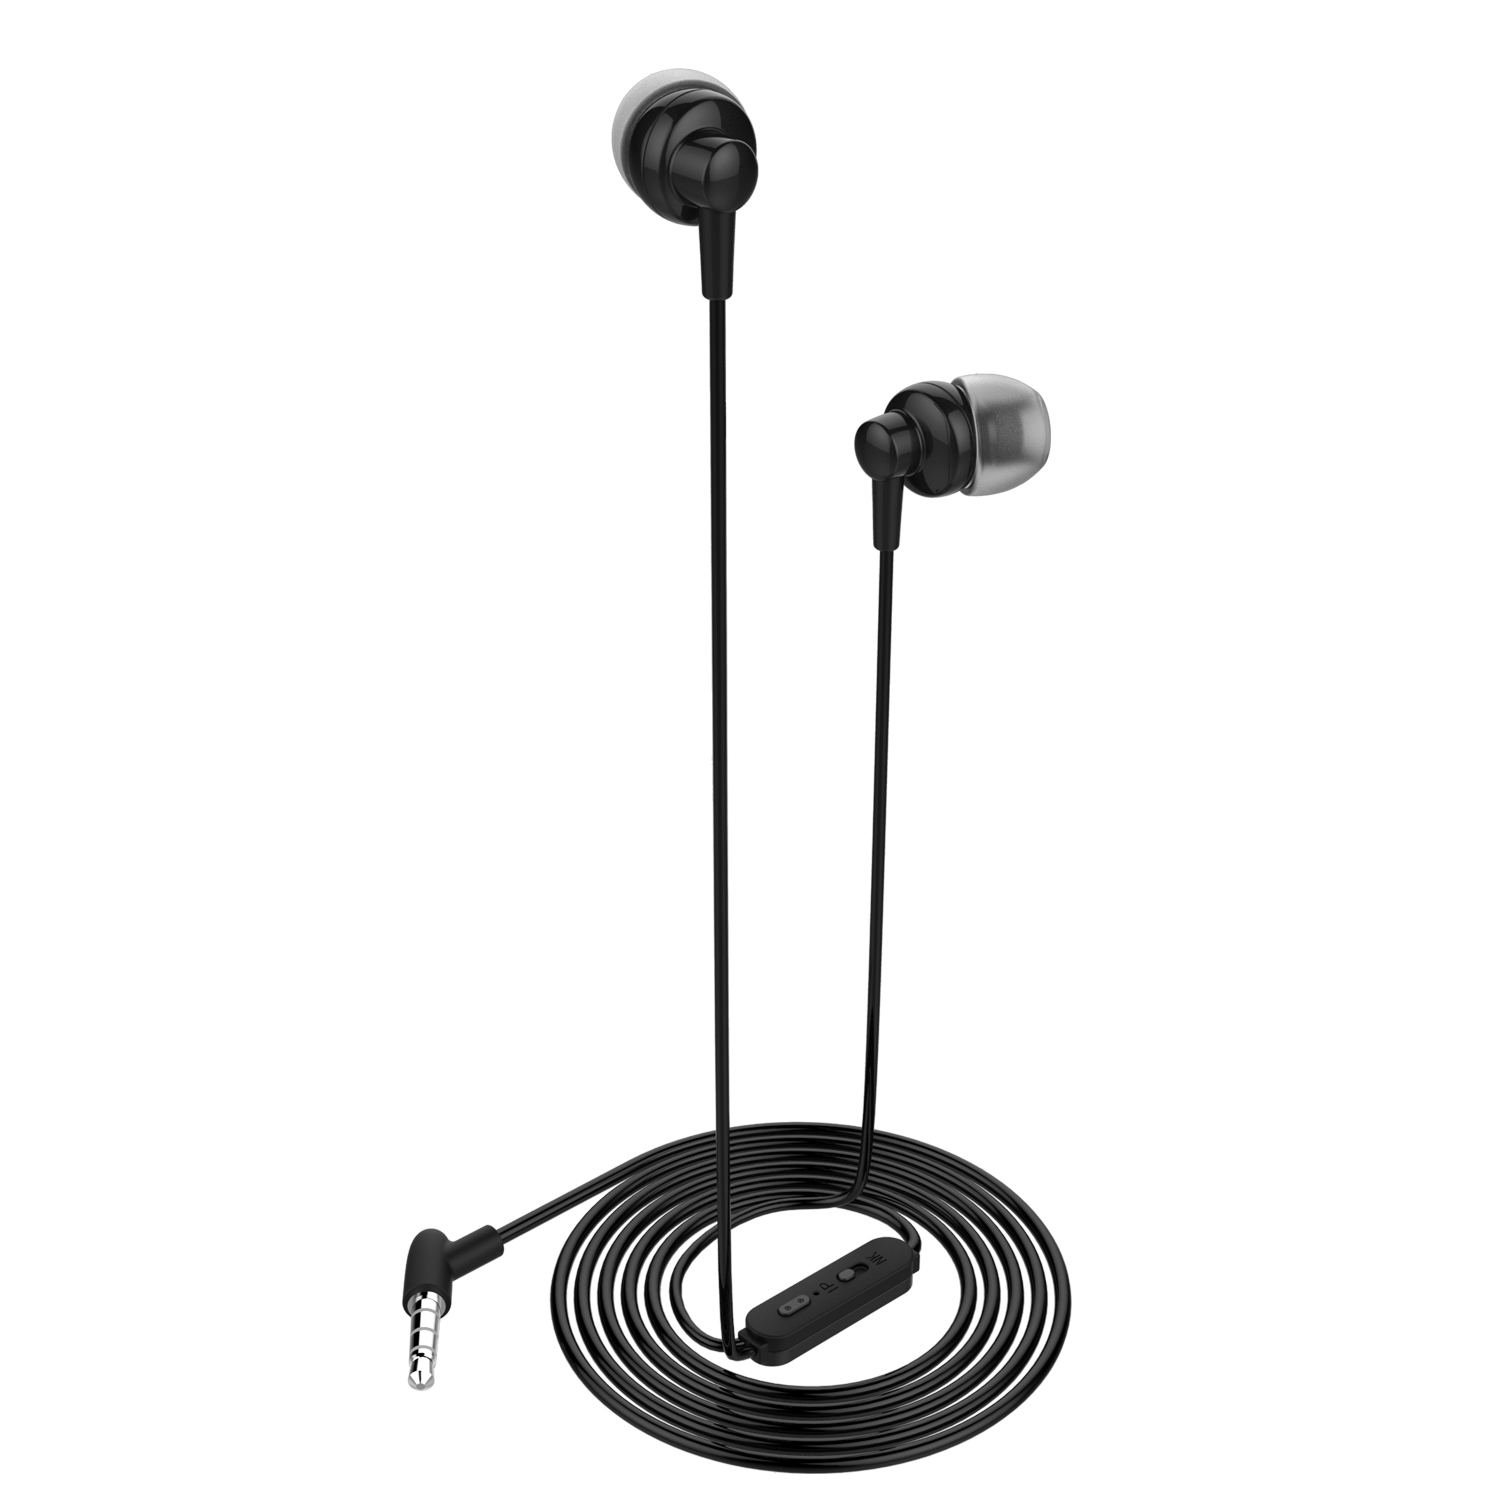 OEM-M170 headphones with microphone in ear earphone